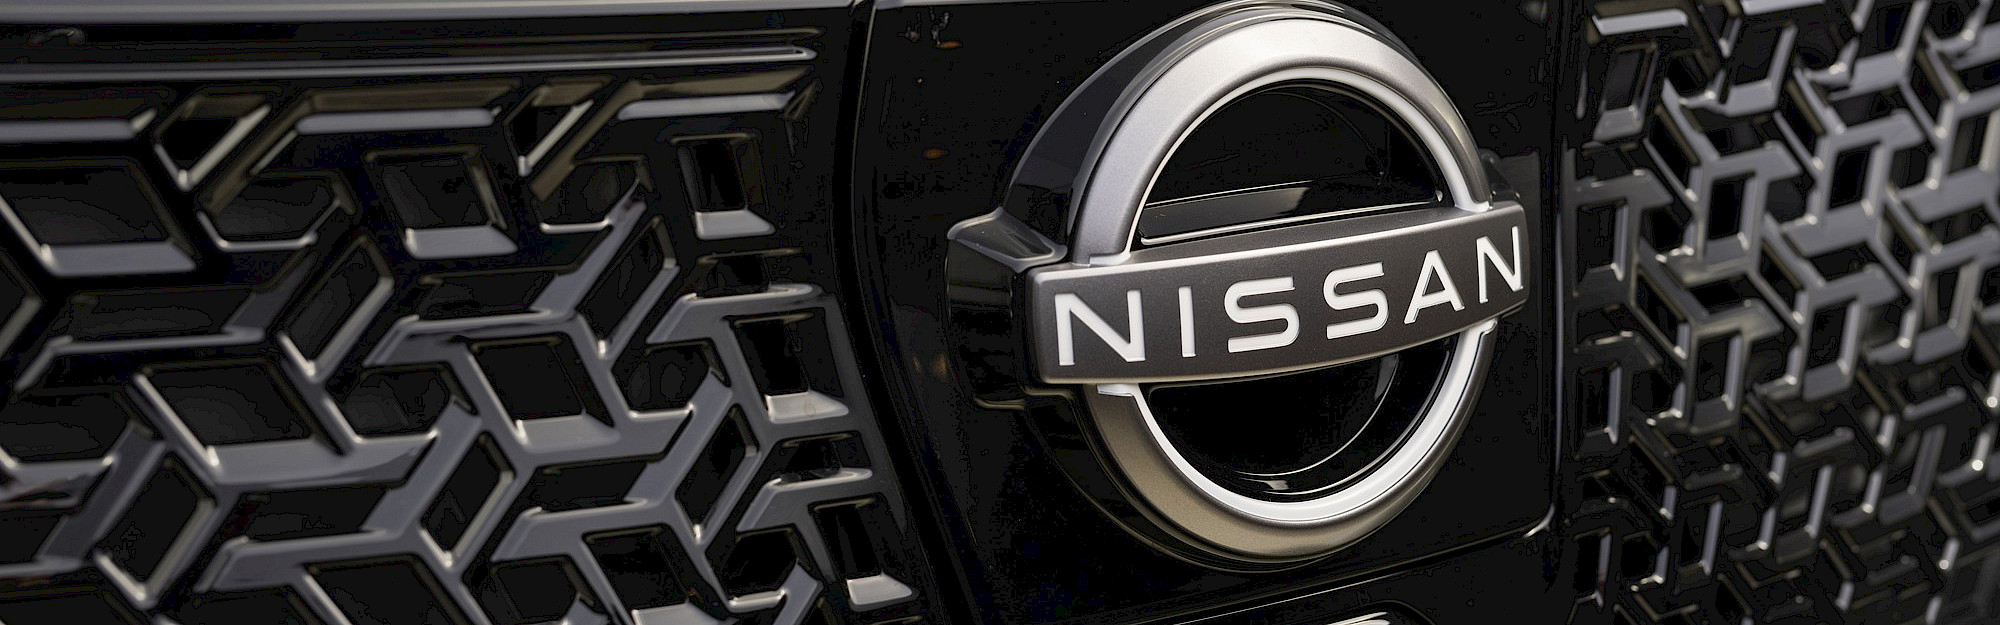 Nissan Townstar Van EV díszrács és logo